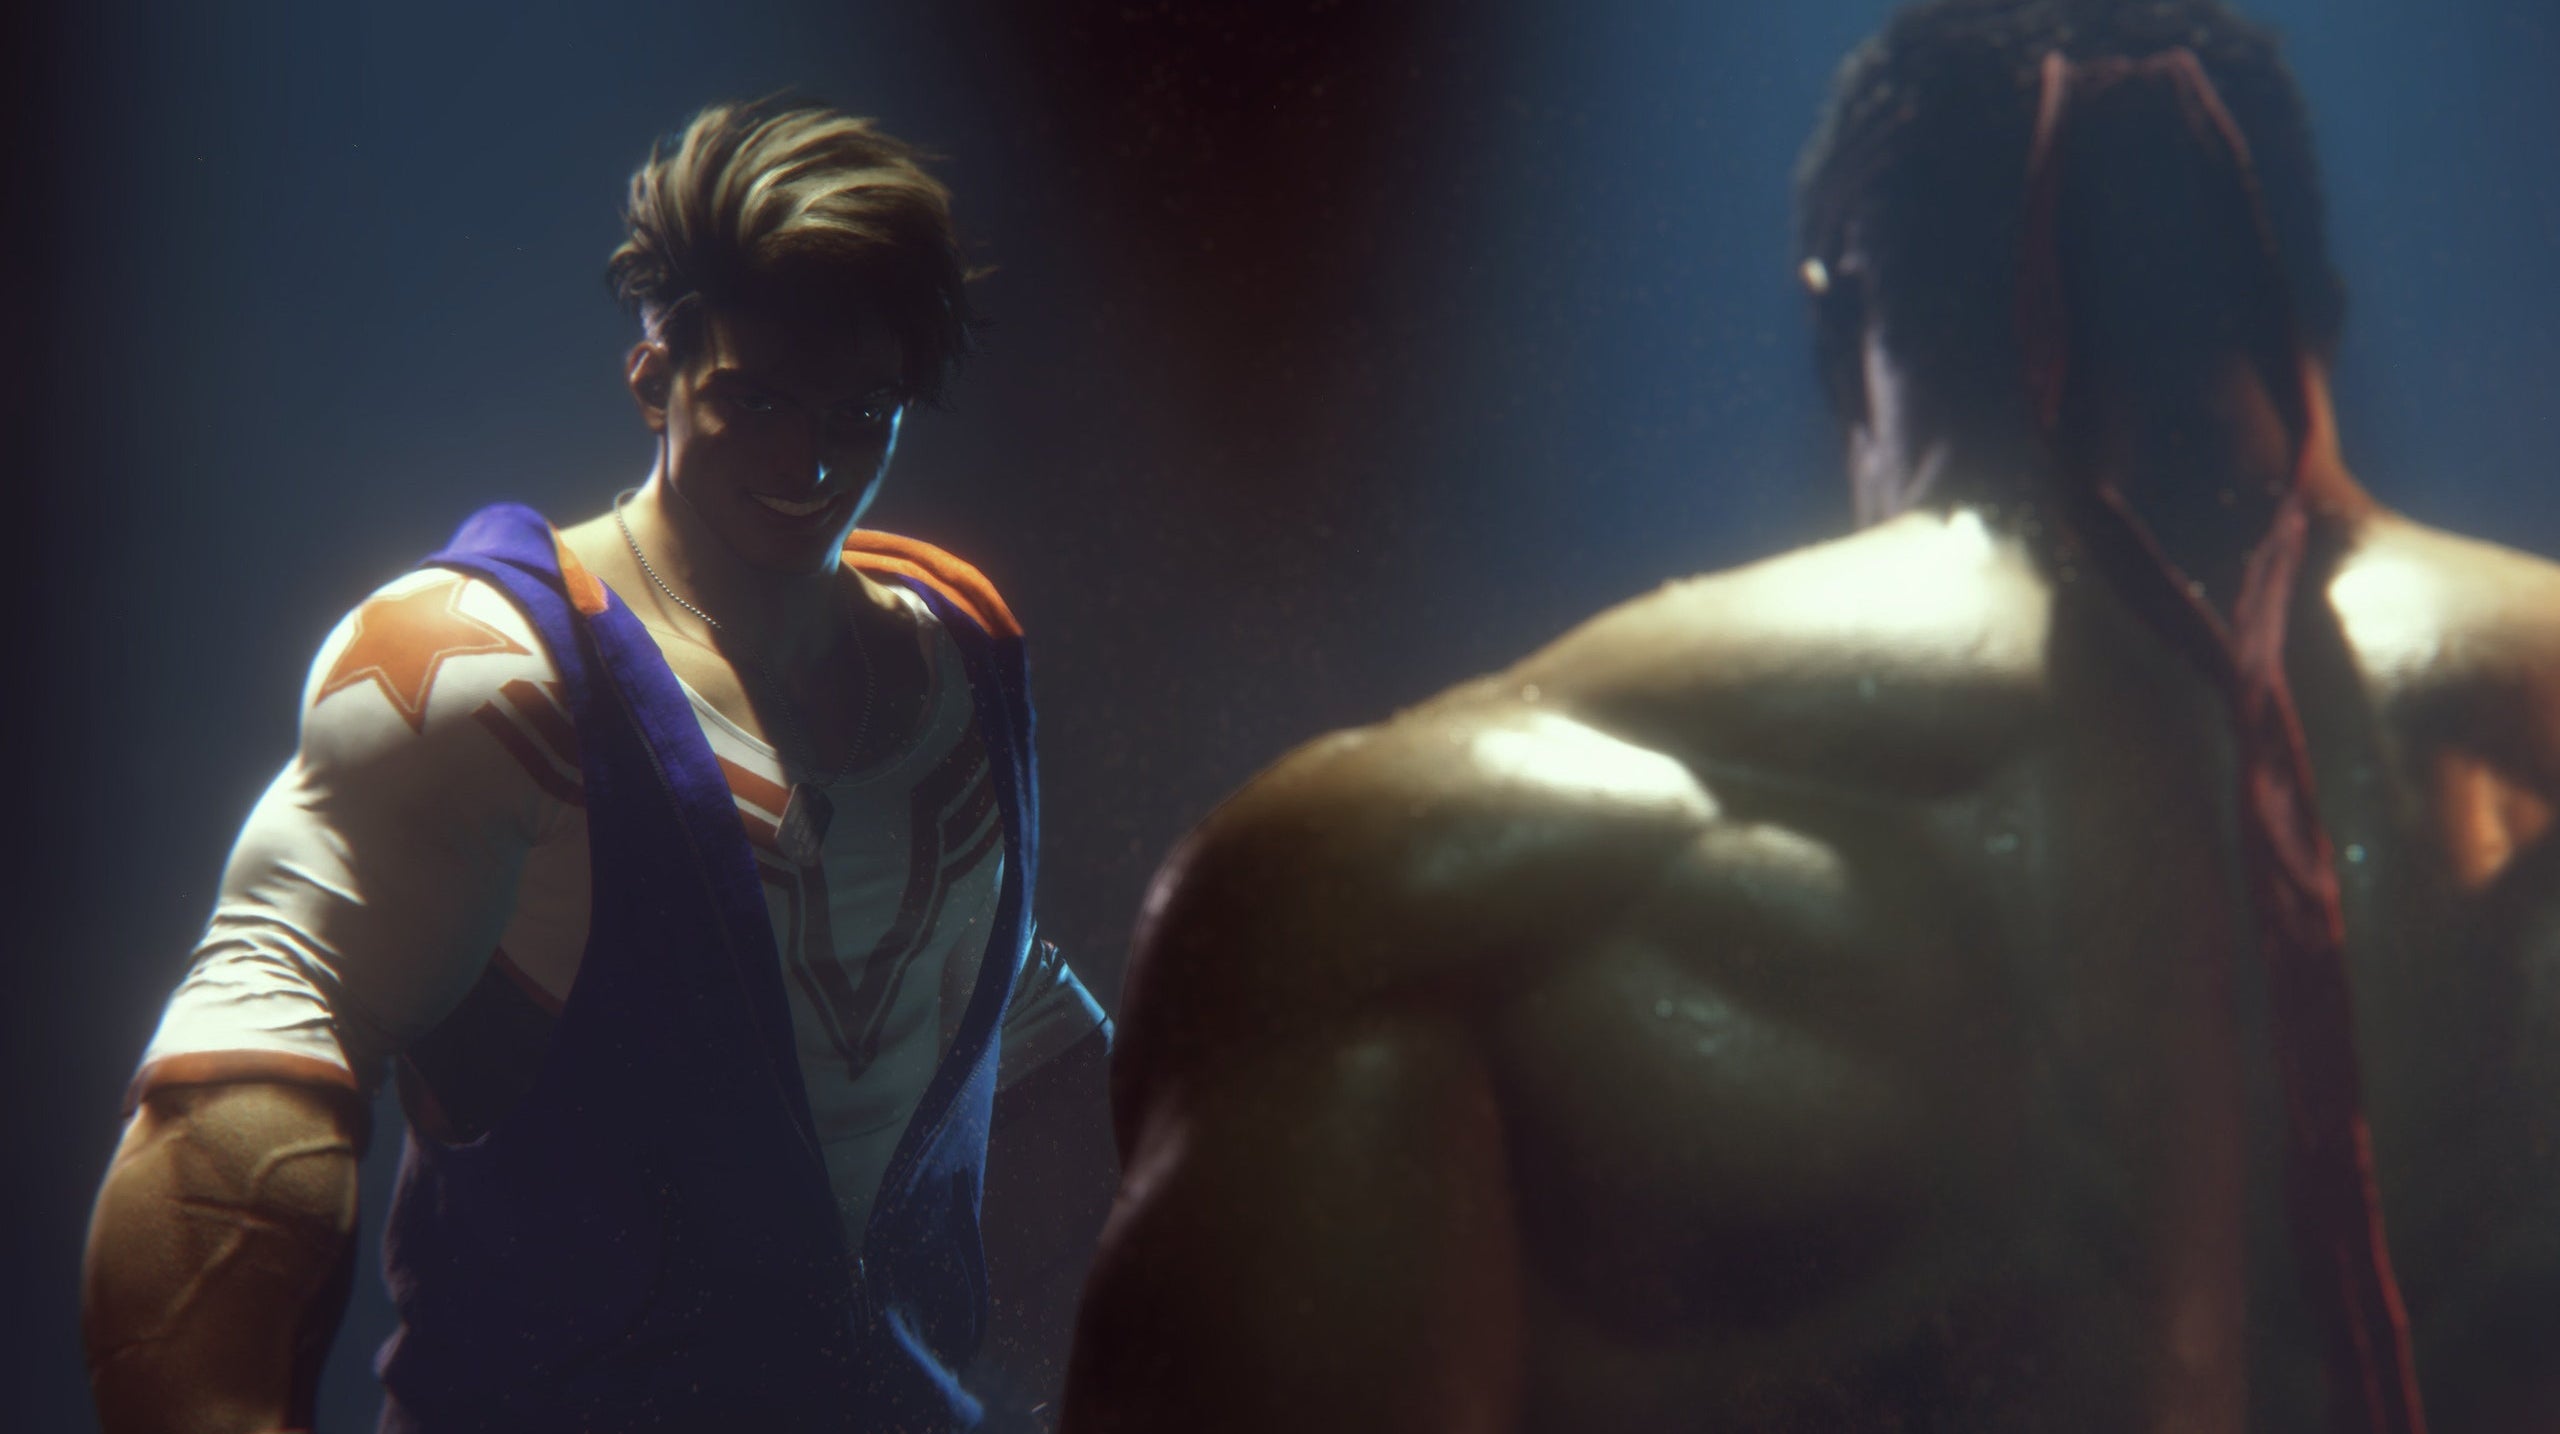 Immagine di Street Fighter VI è ufficiale: ecco il primo trailer e dettagli sul ritorno della saga